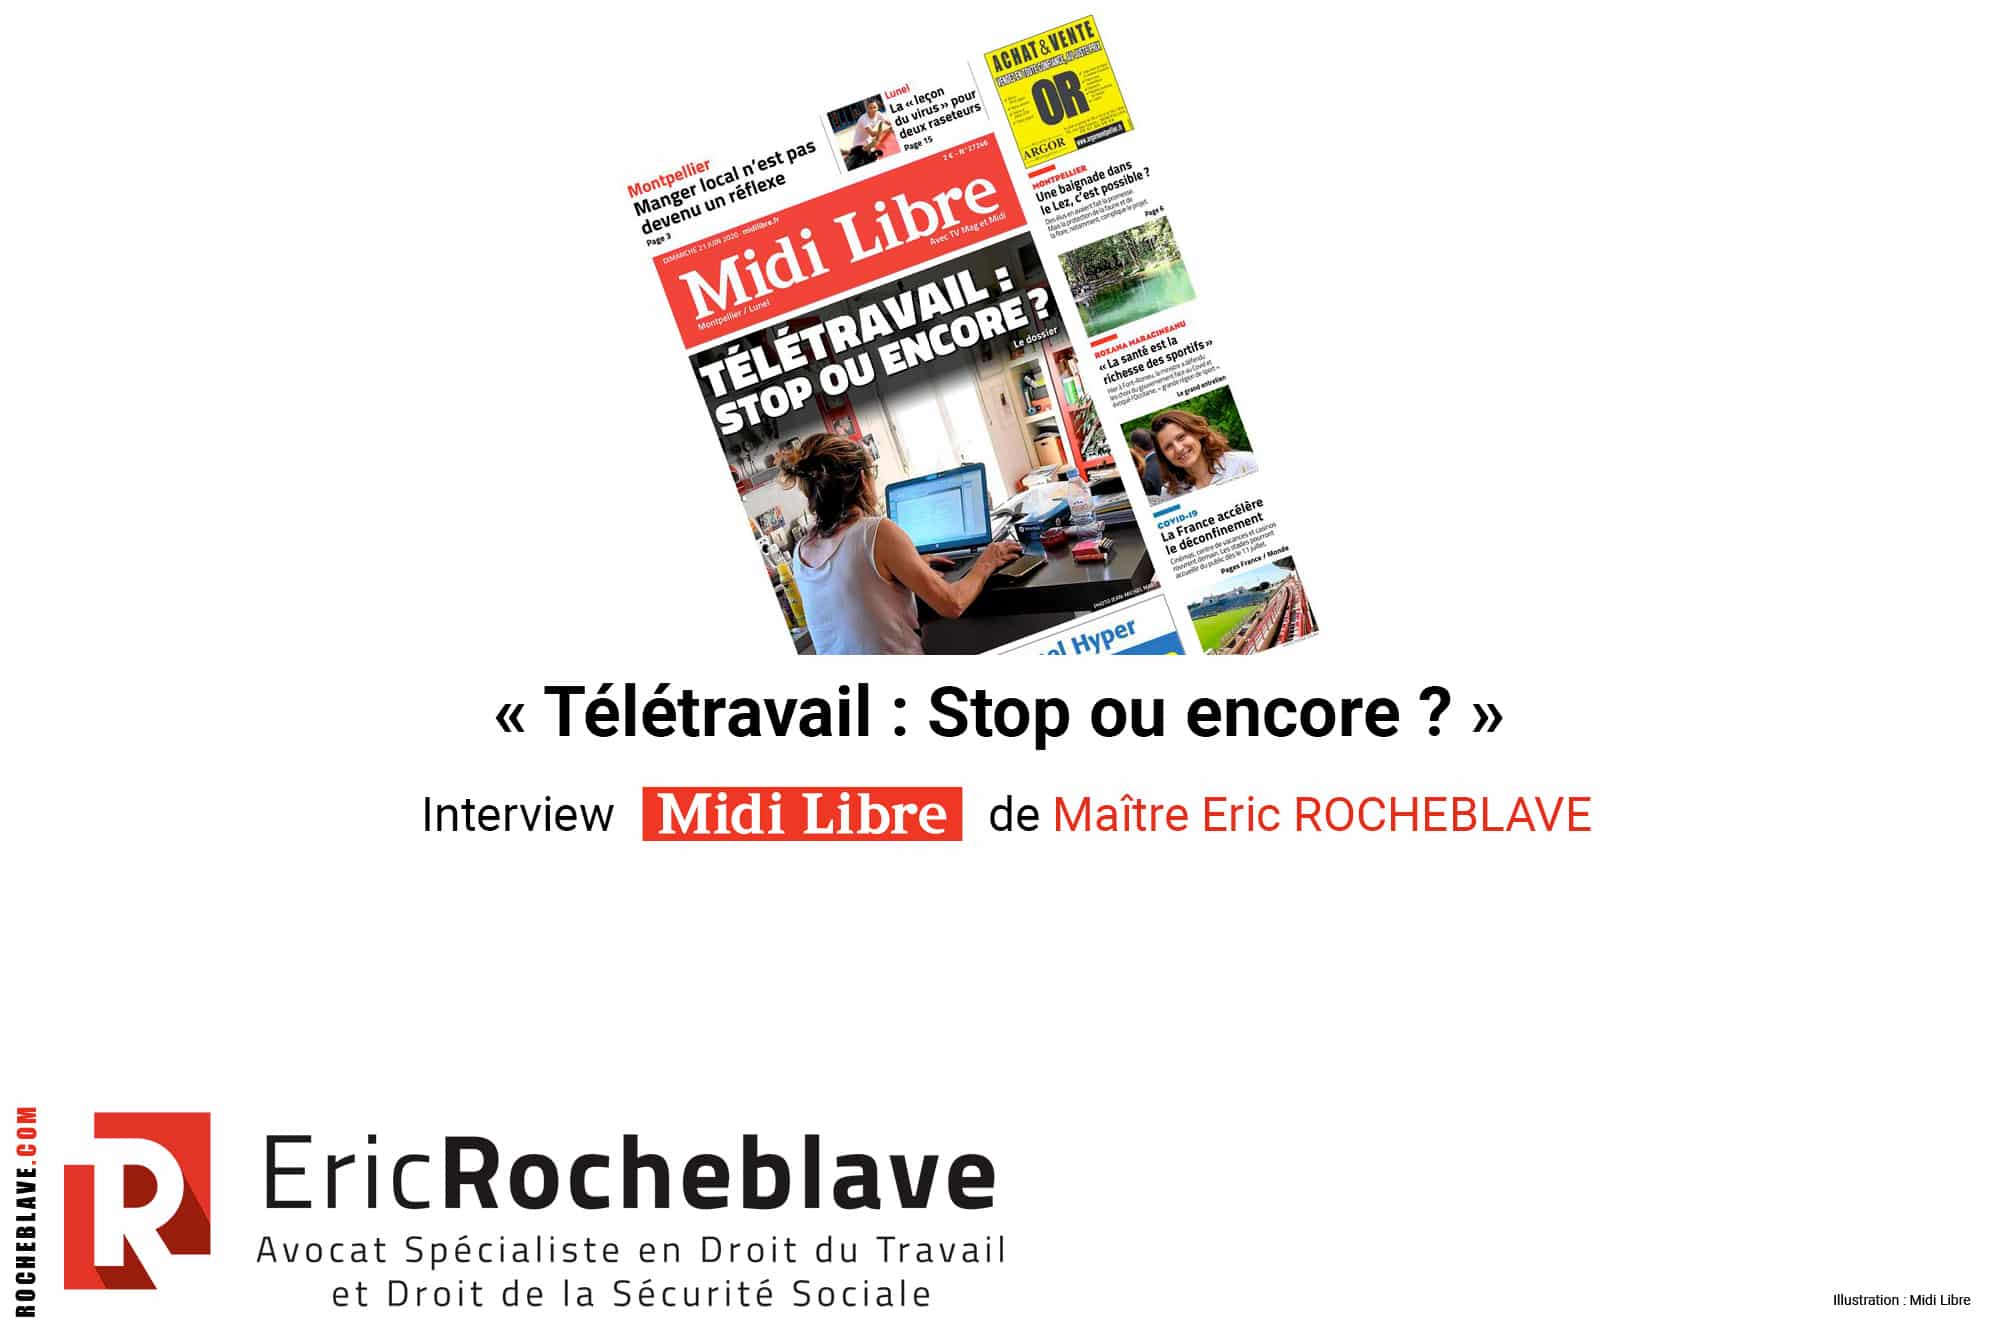 « Télétravail : Stop ou encore ? » Interview Midi Libre de Maître Eric ROCHEBLAVE